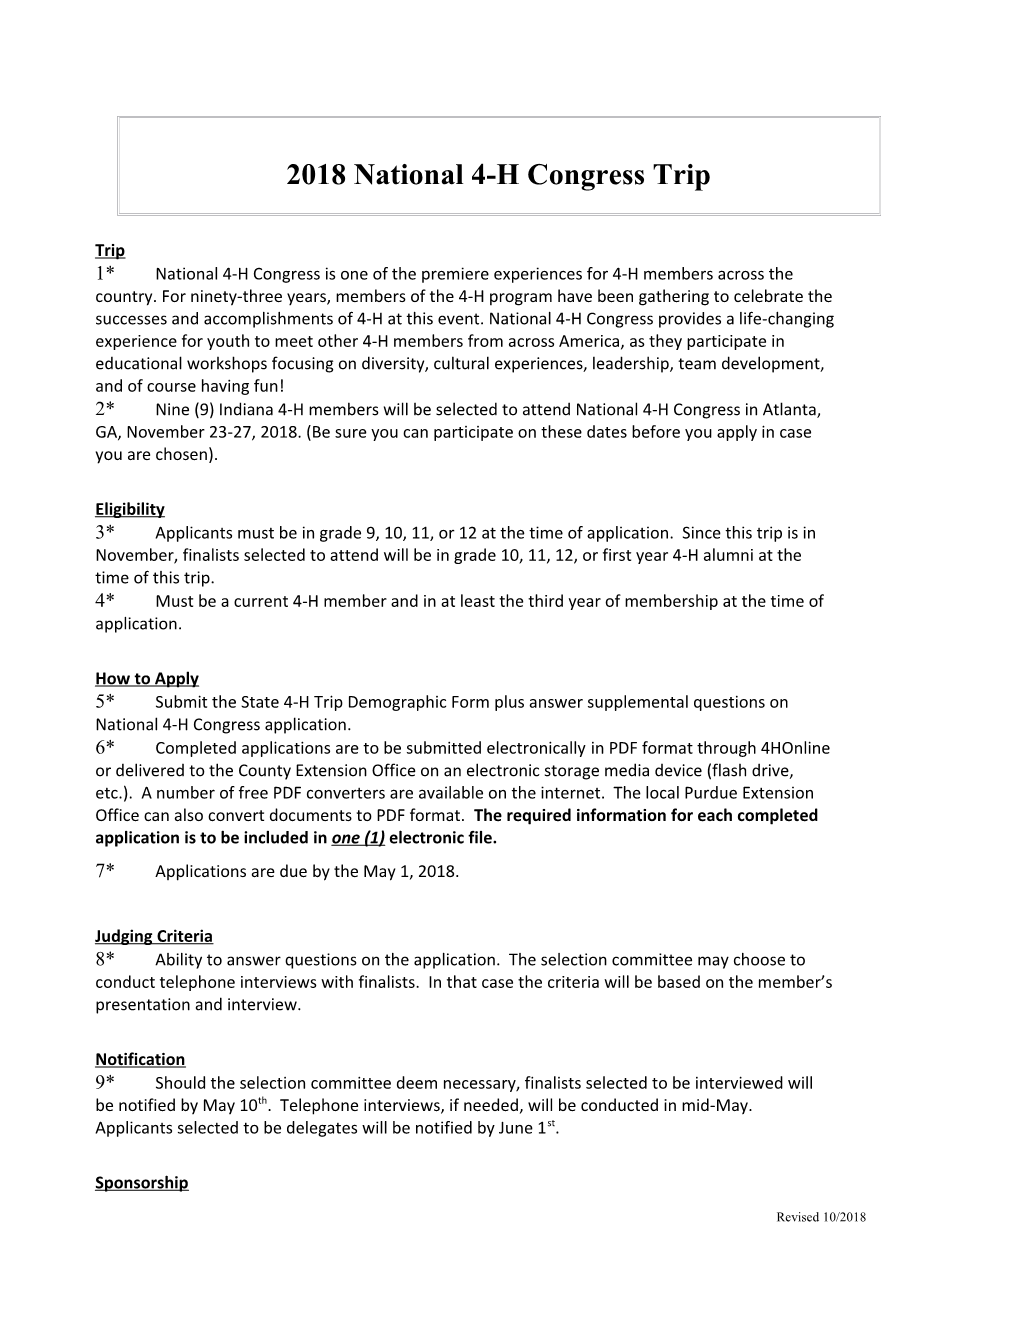 2018National 4-H Congress Trip